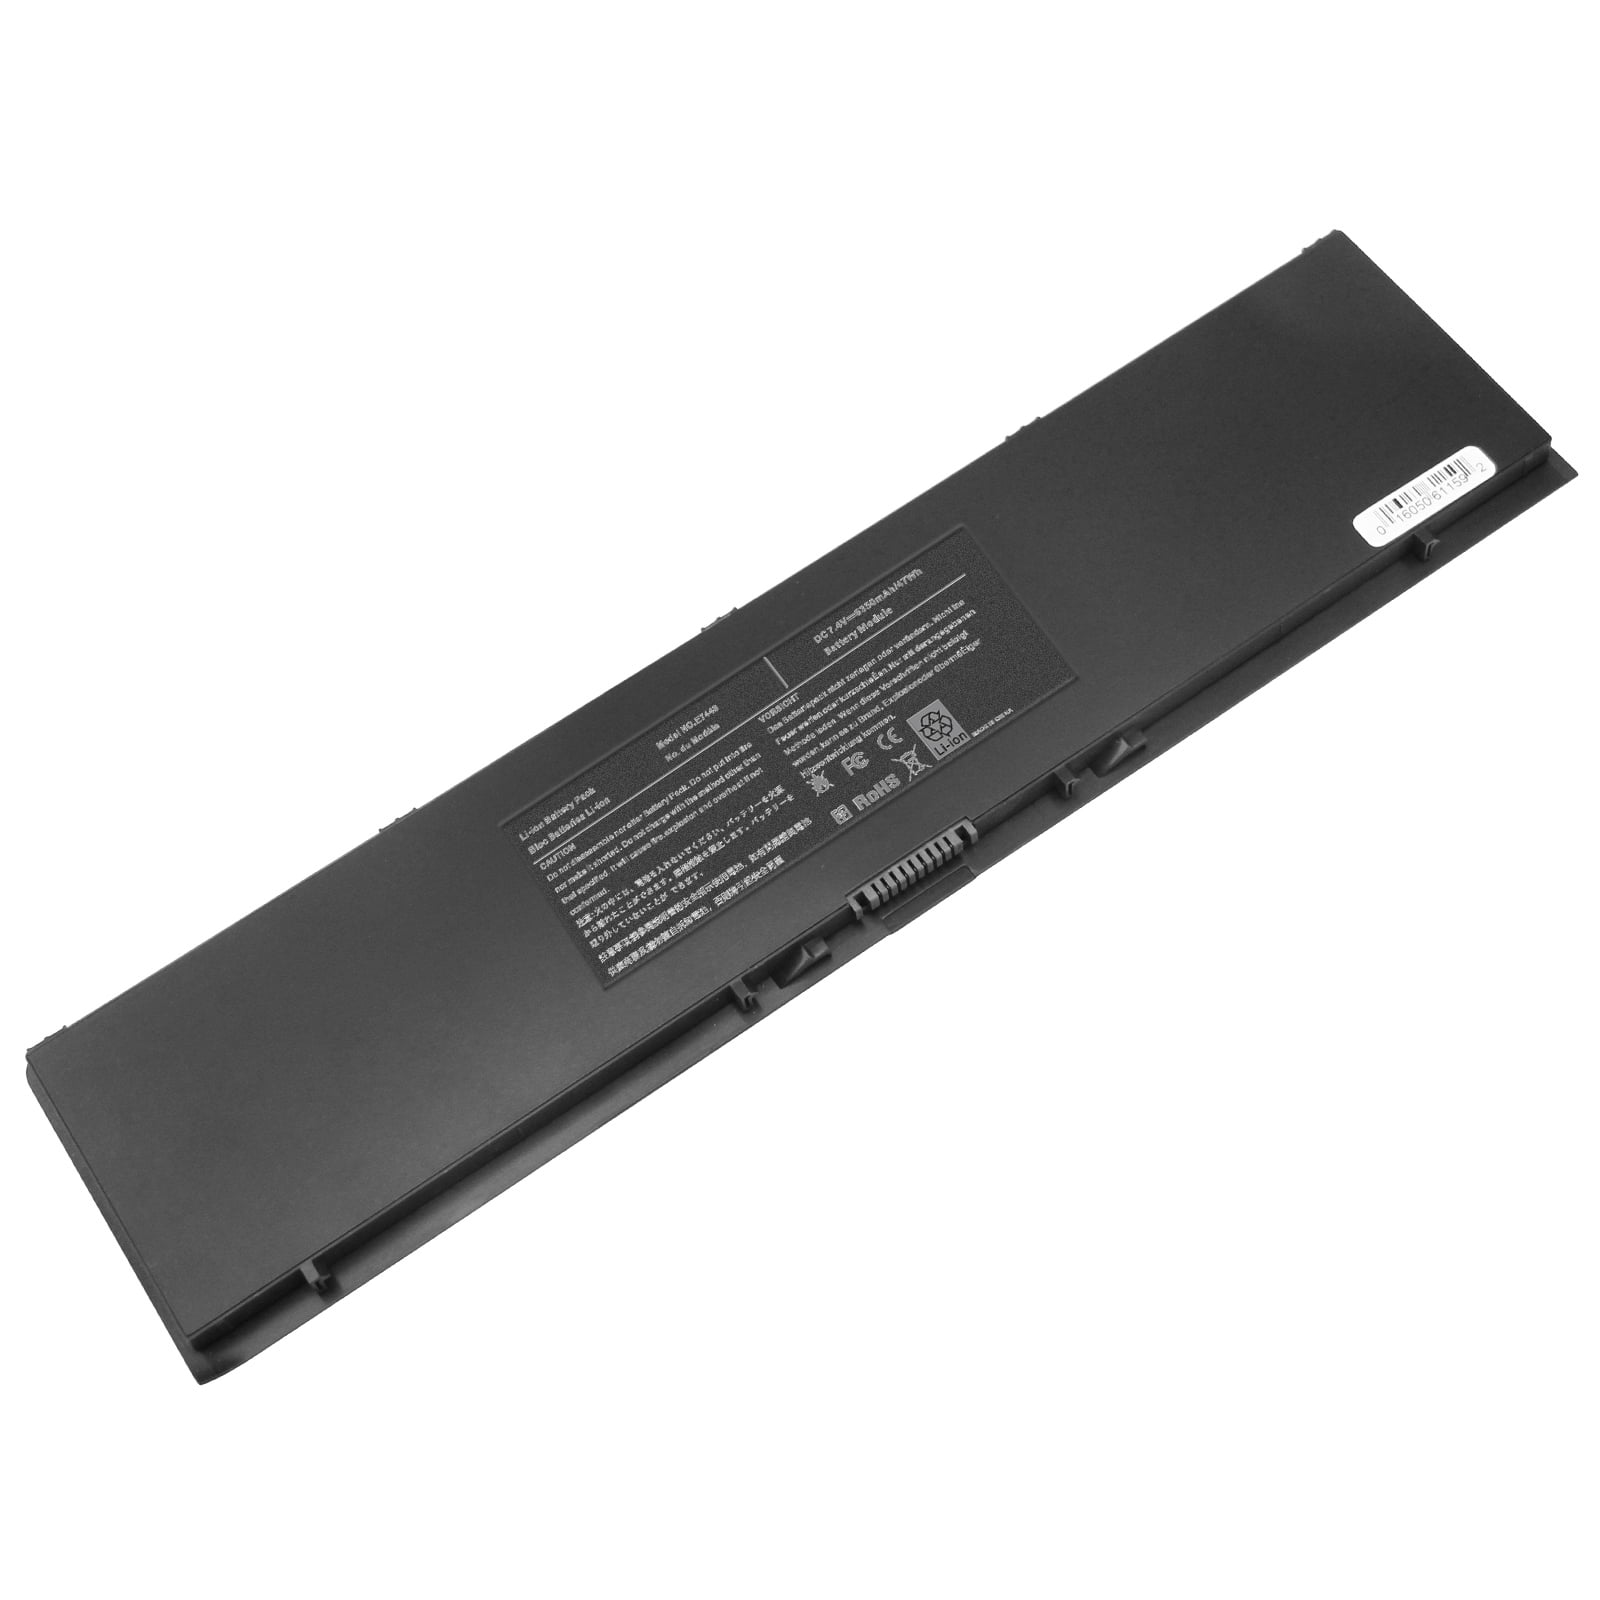 Eenheid Horzel Recensie E7440 Laptop Battery for Dell Latitude 14 7000 E7440 E7450 E7420 Series  F38HT G95J5 3RNFD GOG2M T19VW 909H5 451-BBFY V8XN3 G95J5 7420 C8GC5 KR71X  MGH81 - Walmart.com